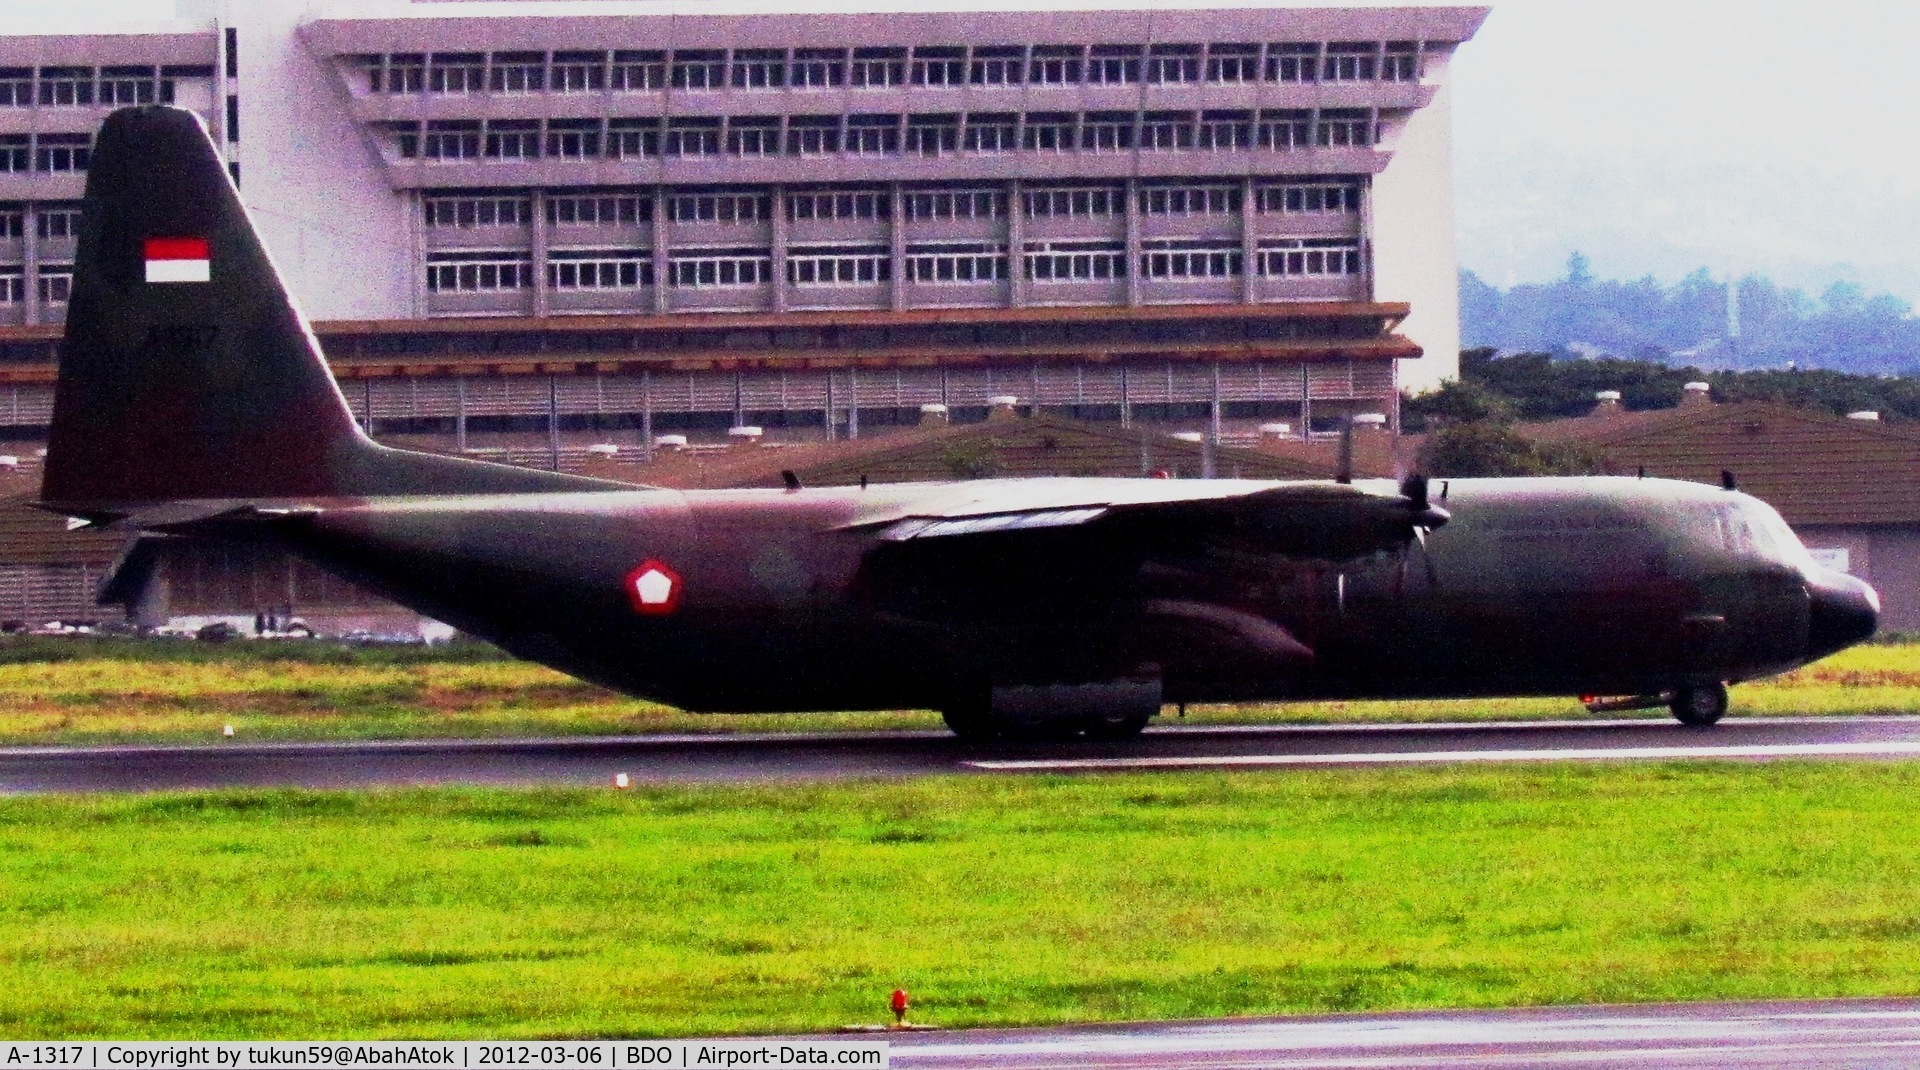 A-1317, Lockheed C-130H-30 Hercules C/N 382-4864, Tentara Nasional Indonesia Angkatan Udara, 
TNI–AU